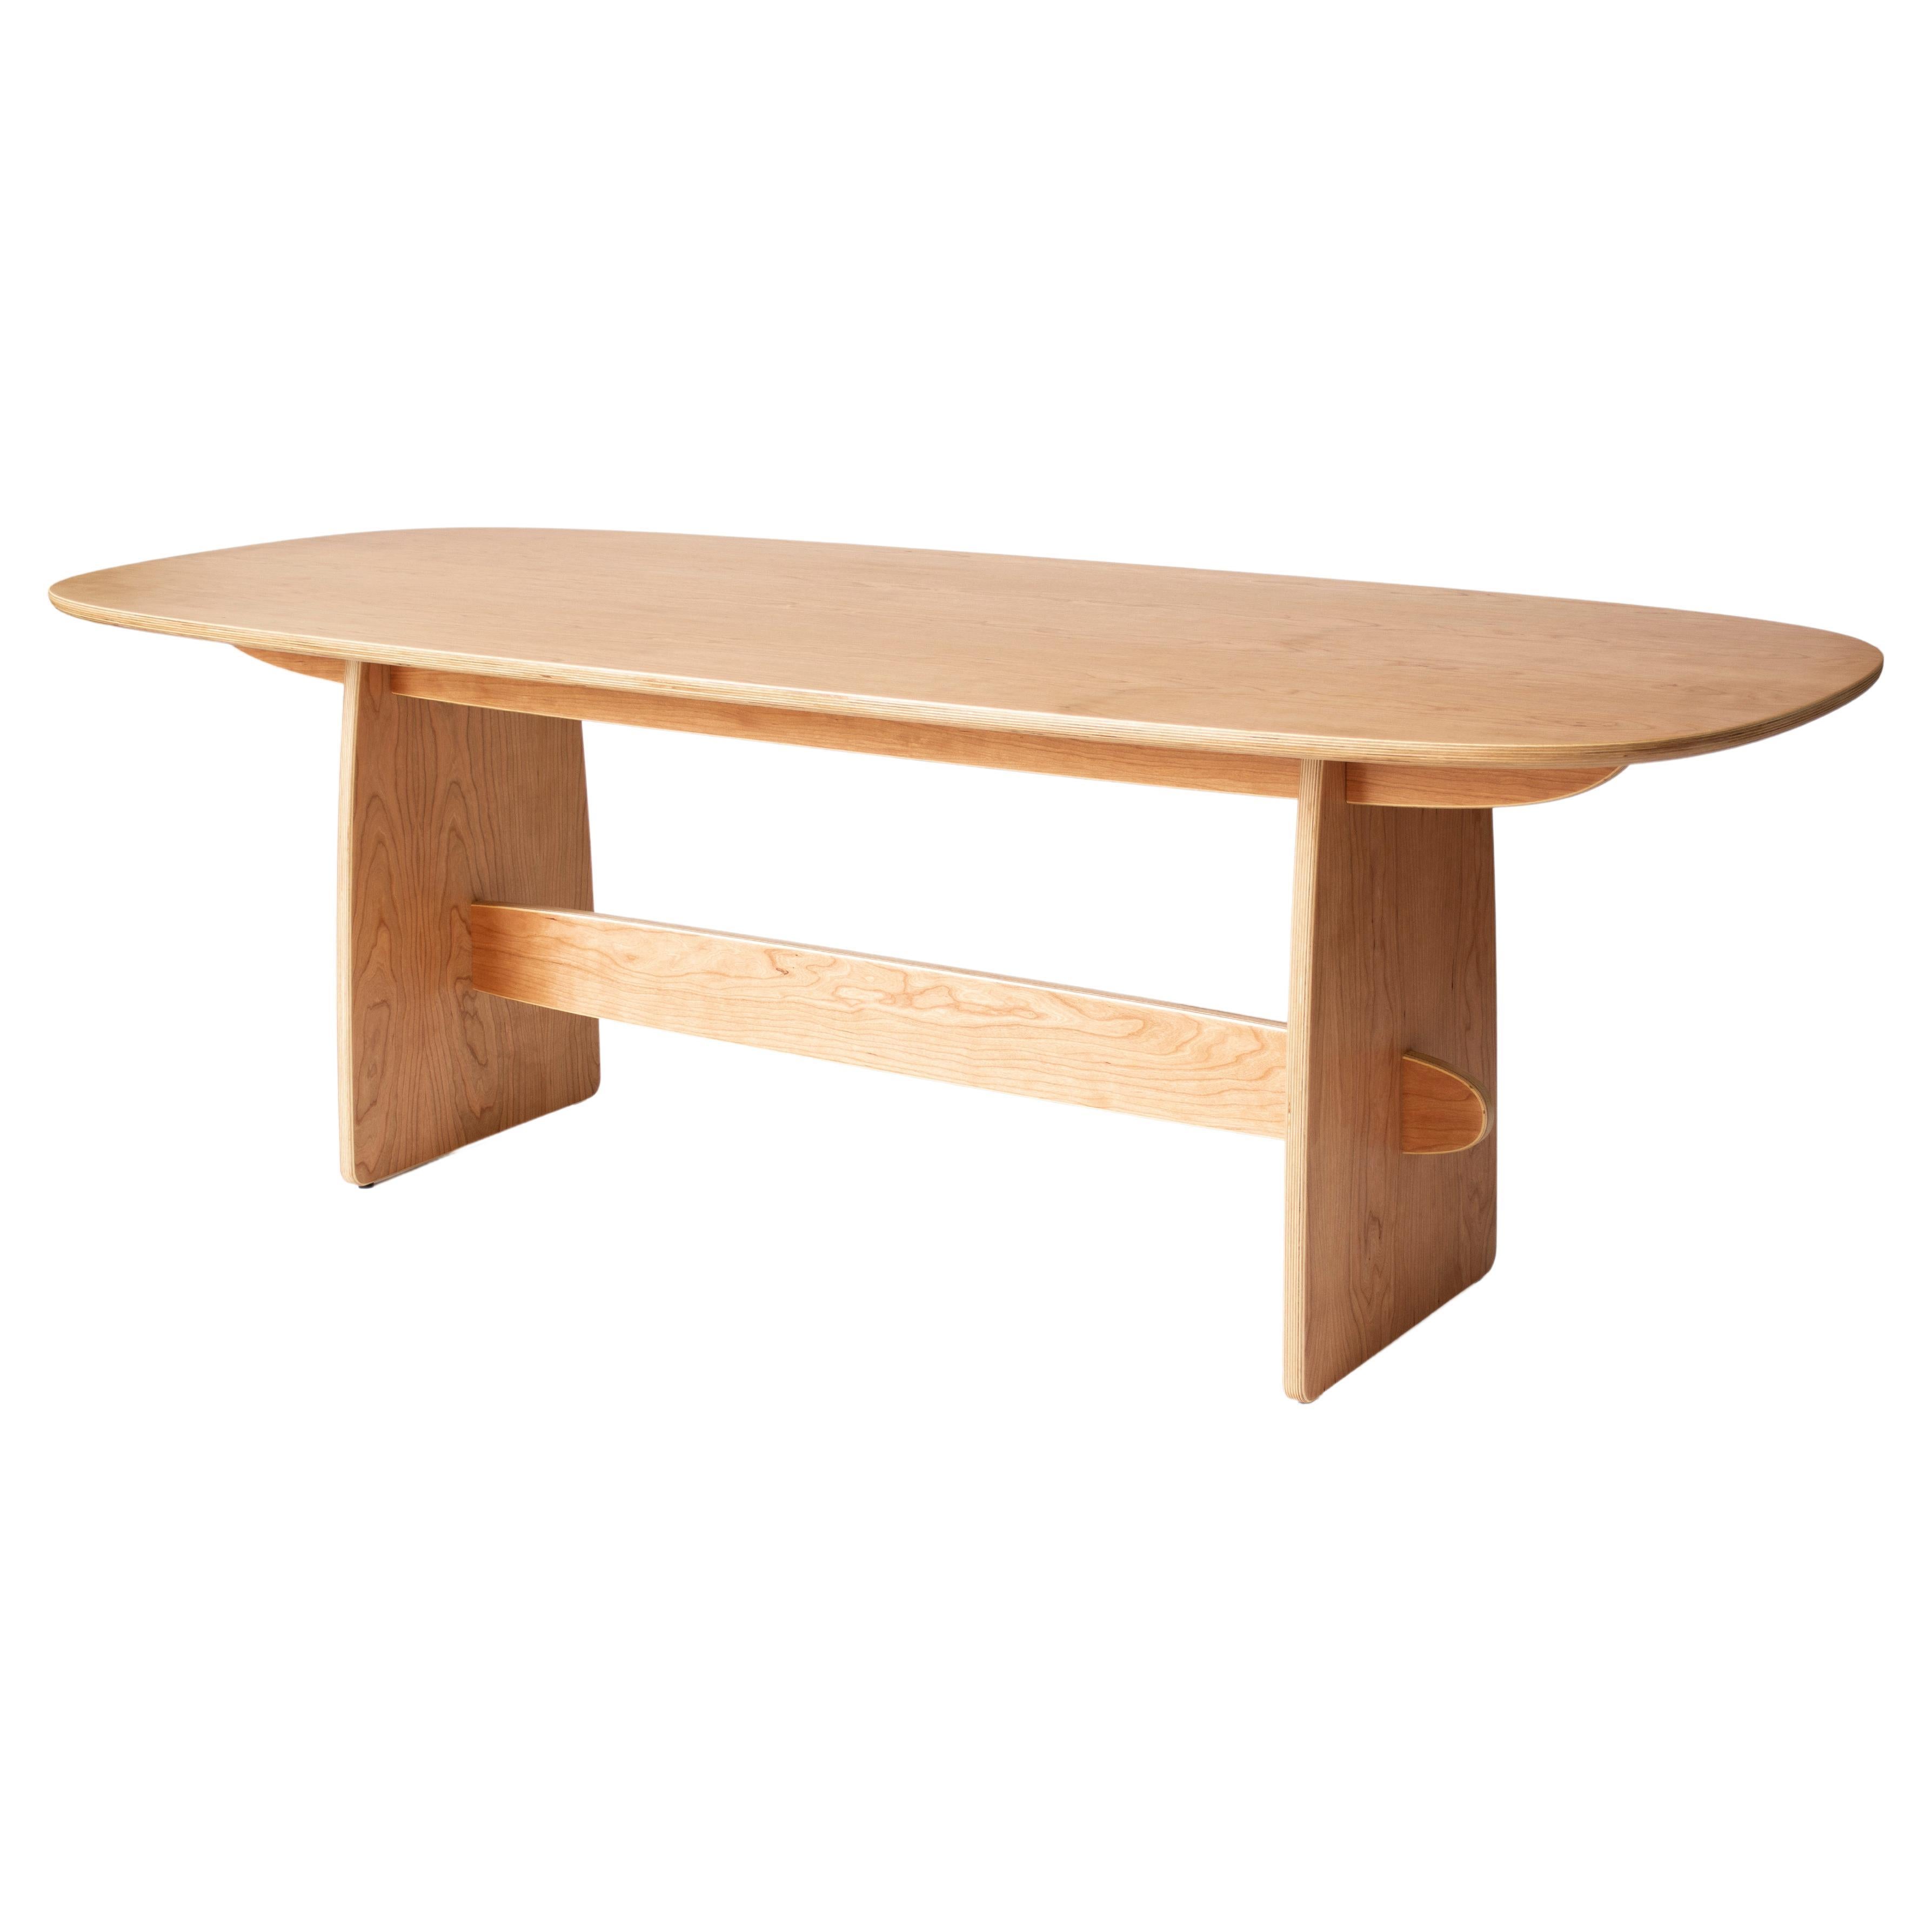 Woodbine Dining Table in cherry veneer hardwood plywood by KLN Studio